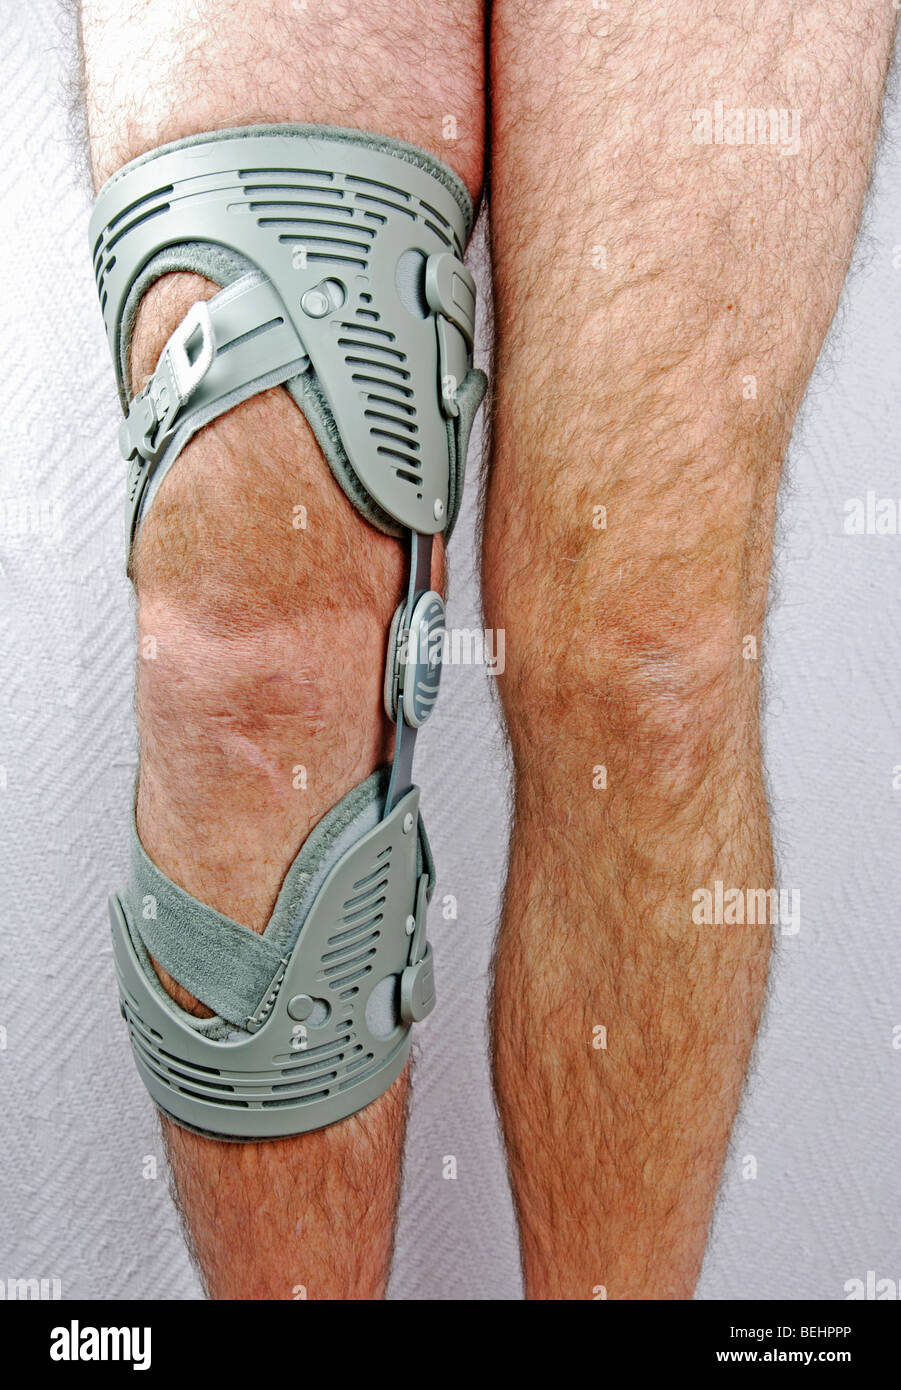 ein Mann mit einem Knie Orthese/Unterstützung auf ein Knie verletzt Stockfoto